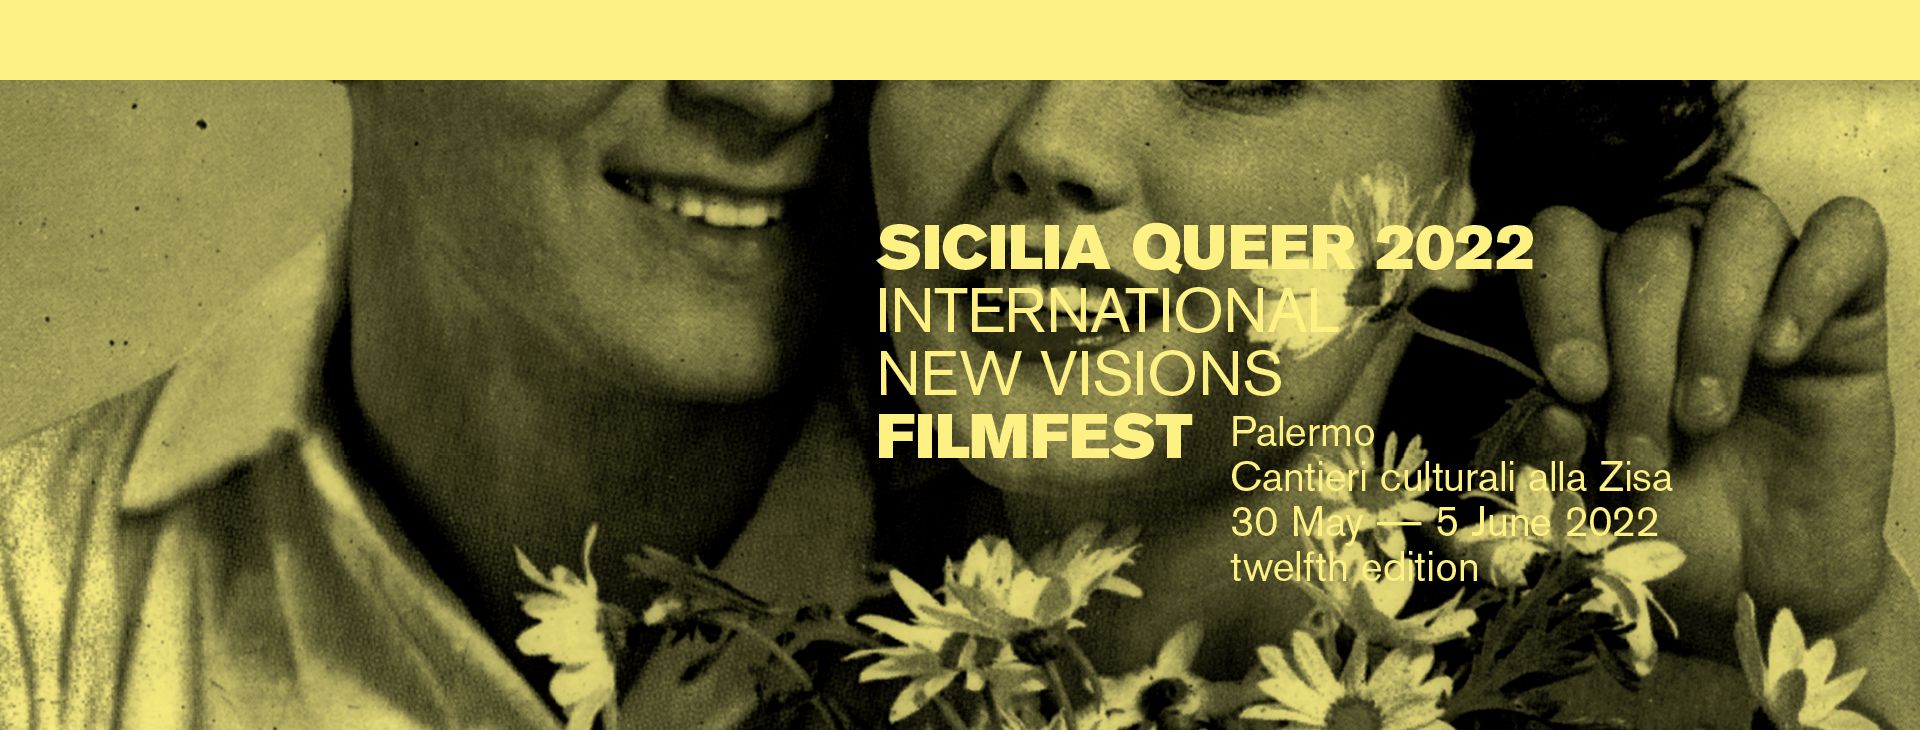 Sicilia Queer filmfest, presentata la 12esima edizione del Festival